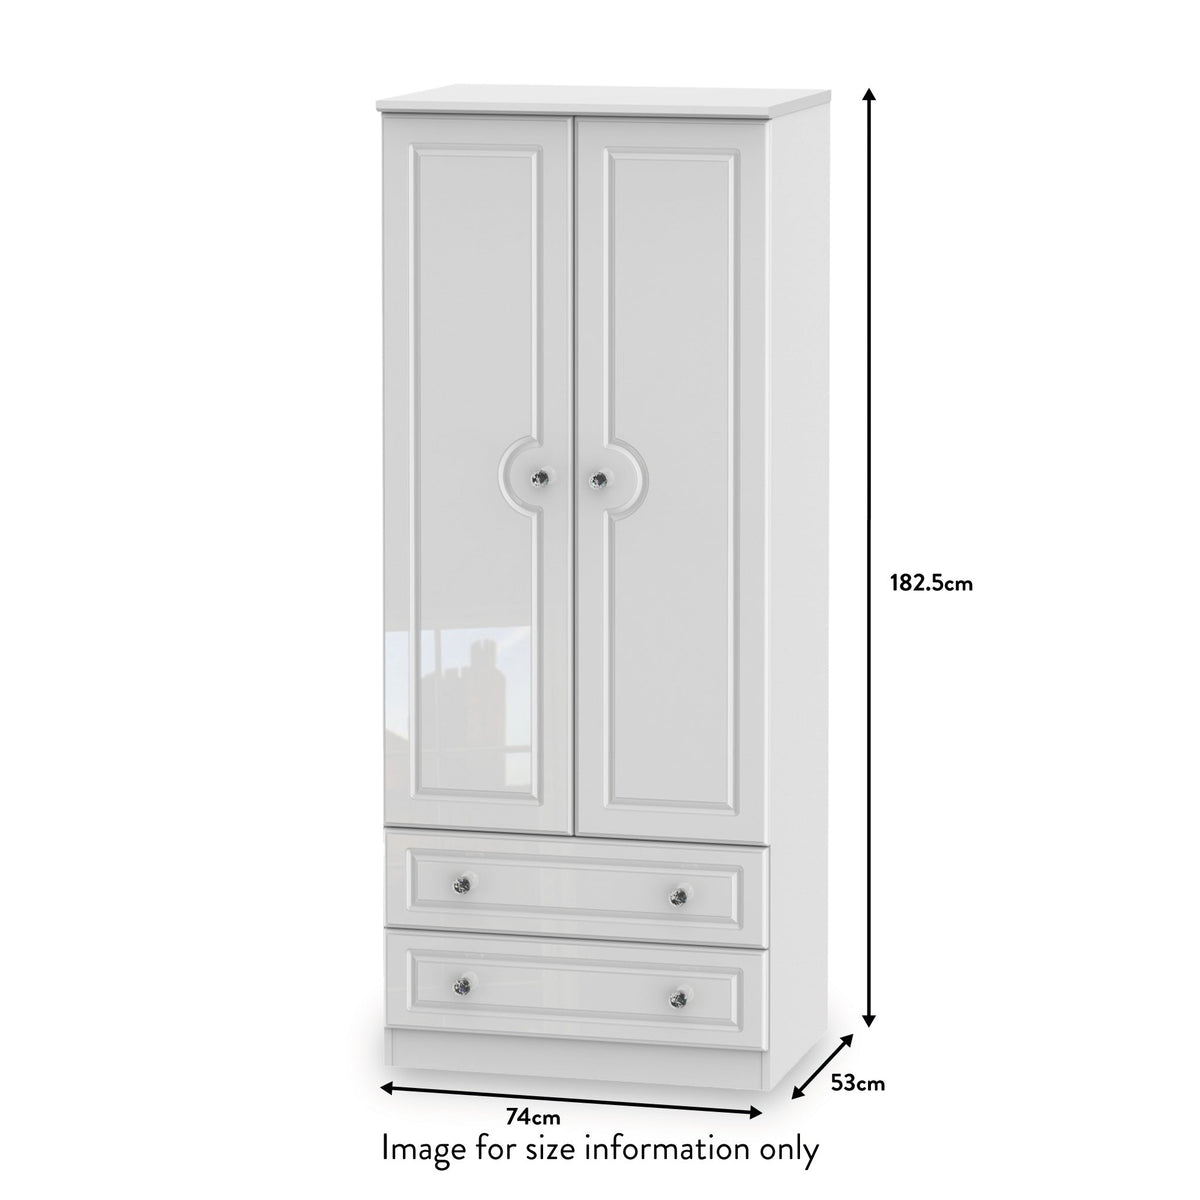 RFBAL061WG Kinsley White Gloss 2 Door 2 Drawer Wardrobe from Roseland size